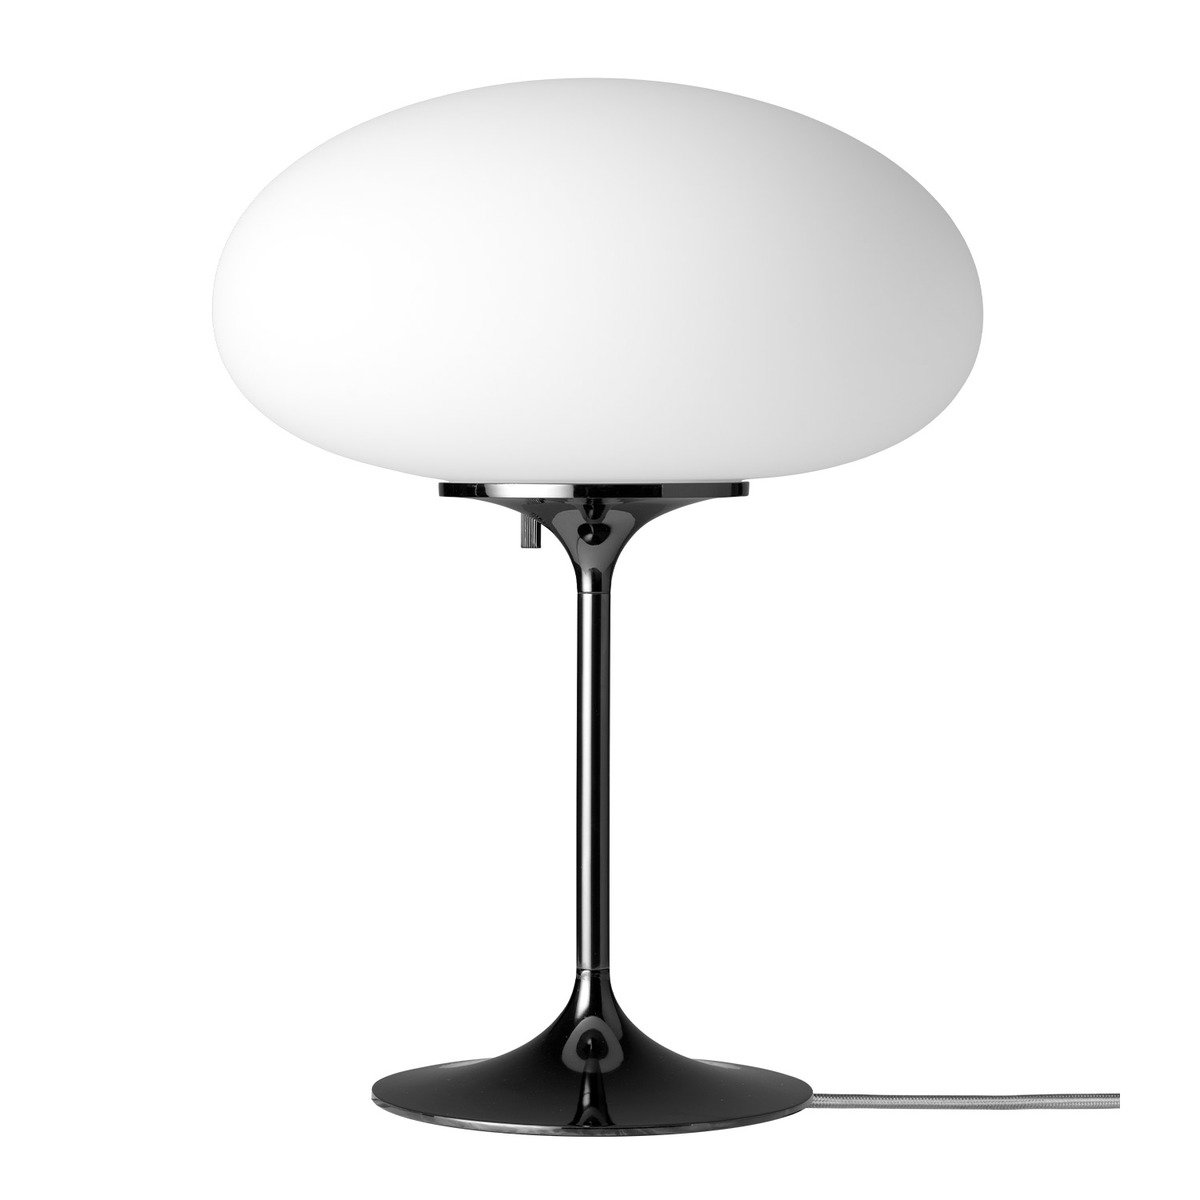 Gubi Stemlite Table Lamp, 42 Cm, Black Chrome